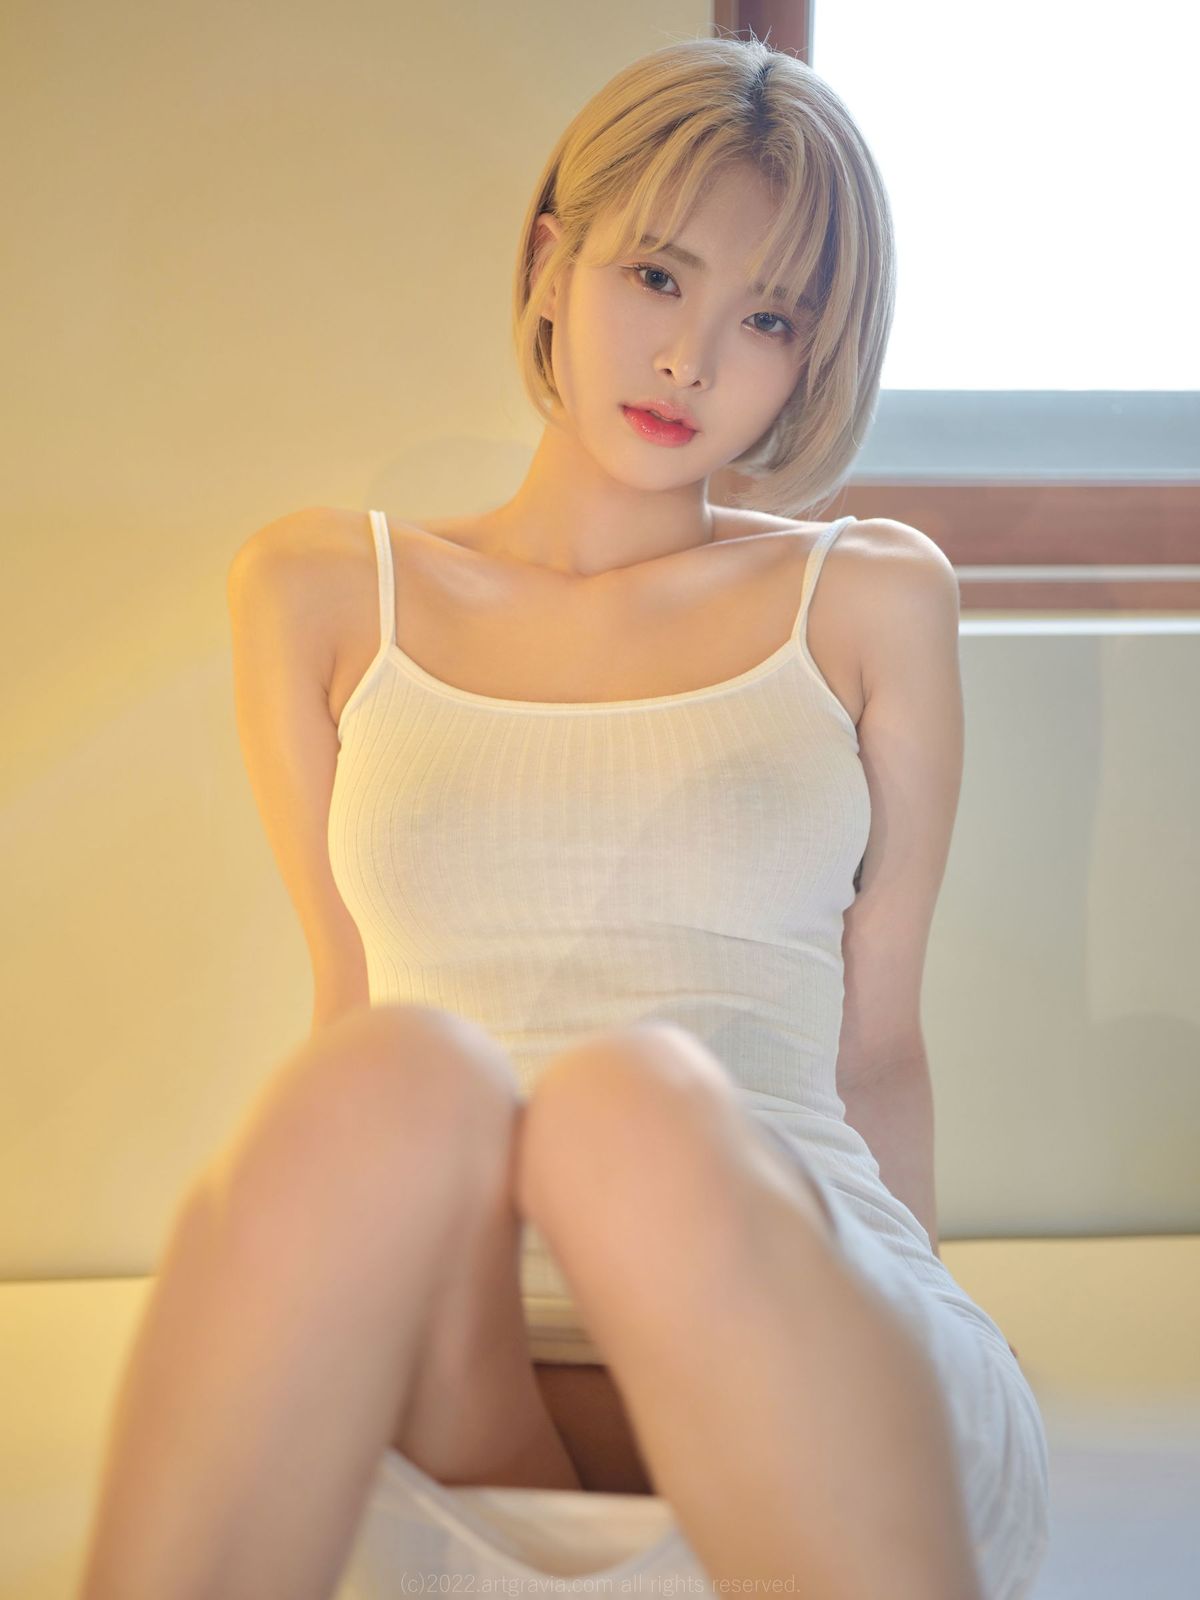 HyoYeon白色吊裙搭配金色短发居家写真